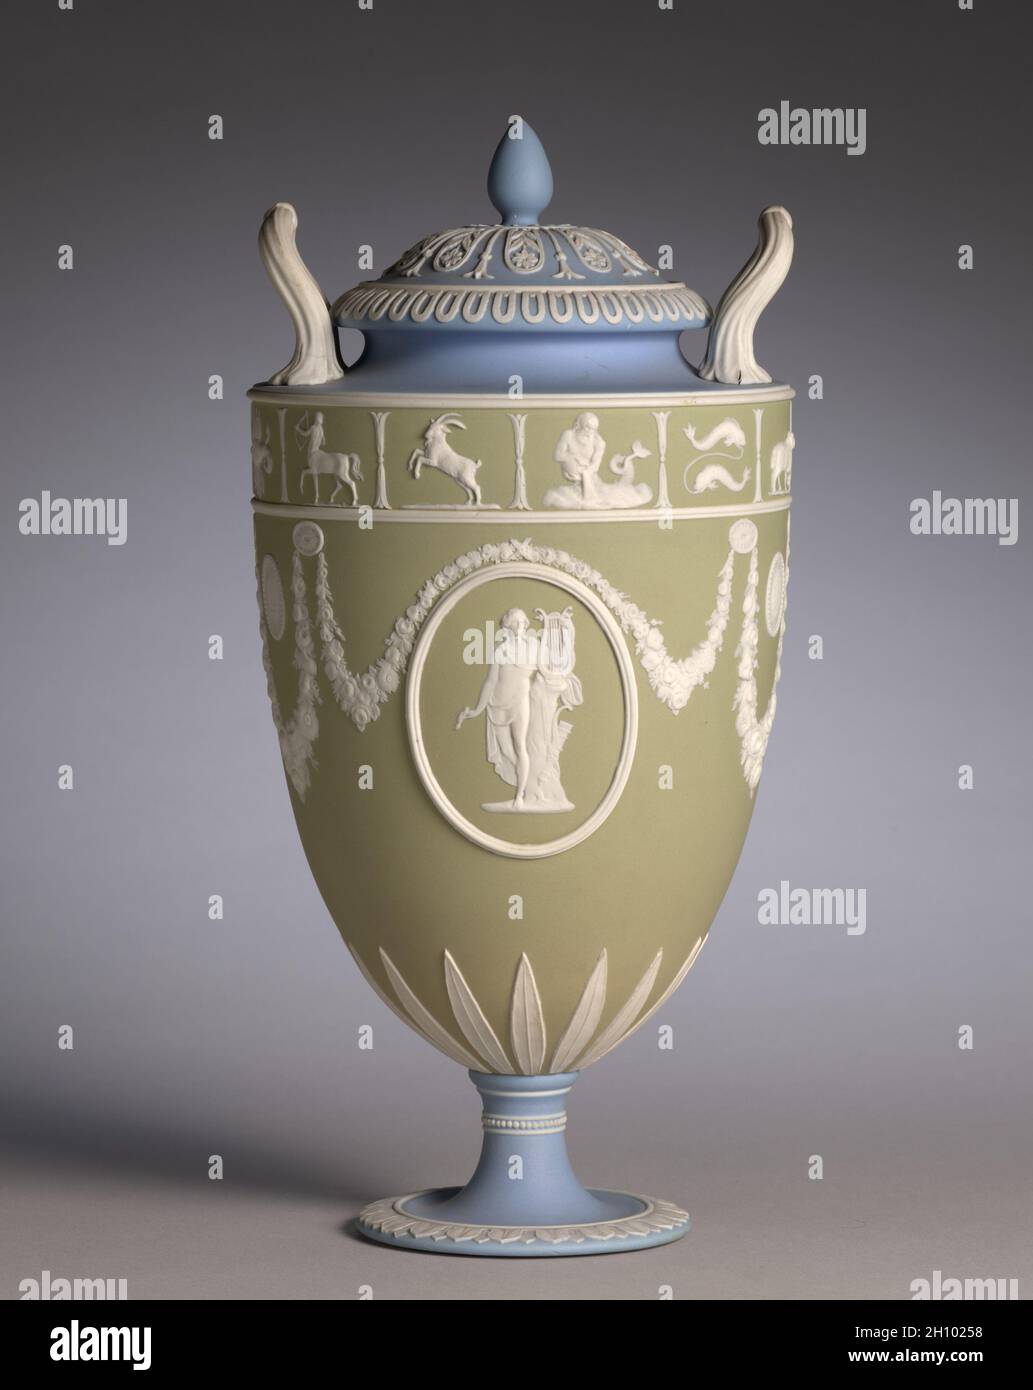 Covered Vase (uno di un paio), c.. 1850. Josiah Wedgwood e figli (britannici, Staffordshire, est. 1759). Vasellame con decorazione a rilievo; totale: 29.9 cm (11 3/4 poll.). La giaspera tricolore di Wedgwood divenne popolare per la prima volta nel 1770 durante un periodo di fascino con decorazione neoclassica. Questo vaso è stato probabilmente fatto intorno al 1850 durante il periodo in cui questo tipo di decorazione è stato ravvivato. I medaglioni di rilievo raffigurano due versioni del dio greco Apollo, il dio della musica, accanto alla sua arpa o lira. Foto Stock